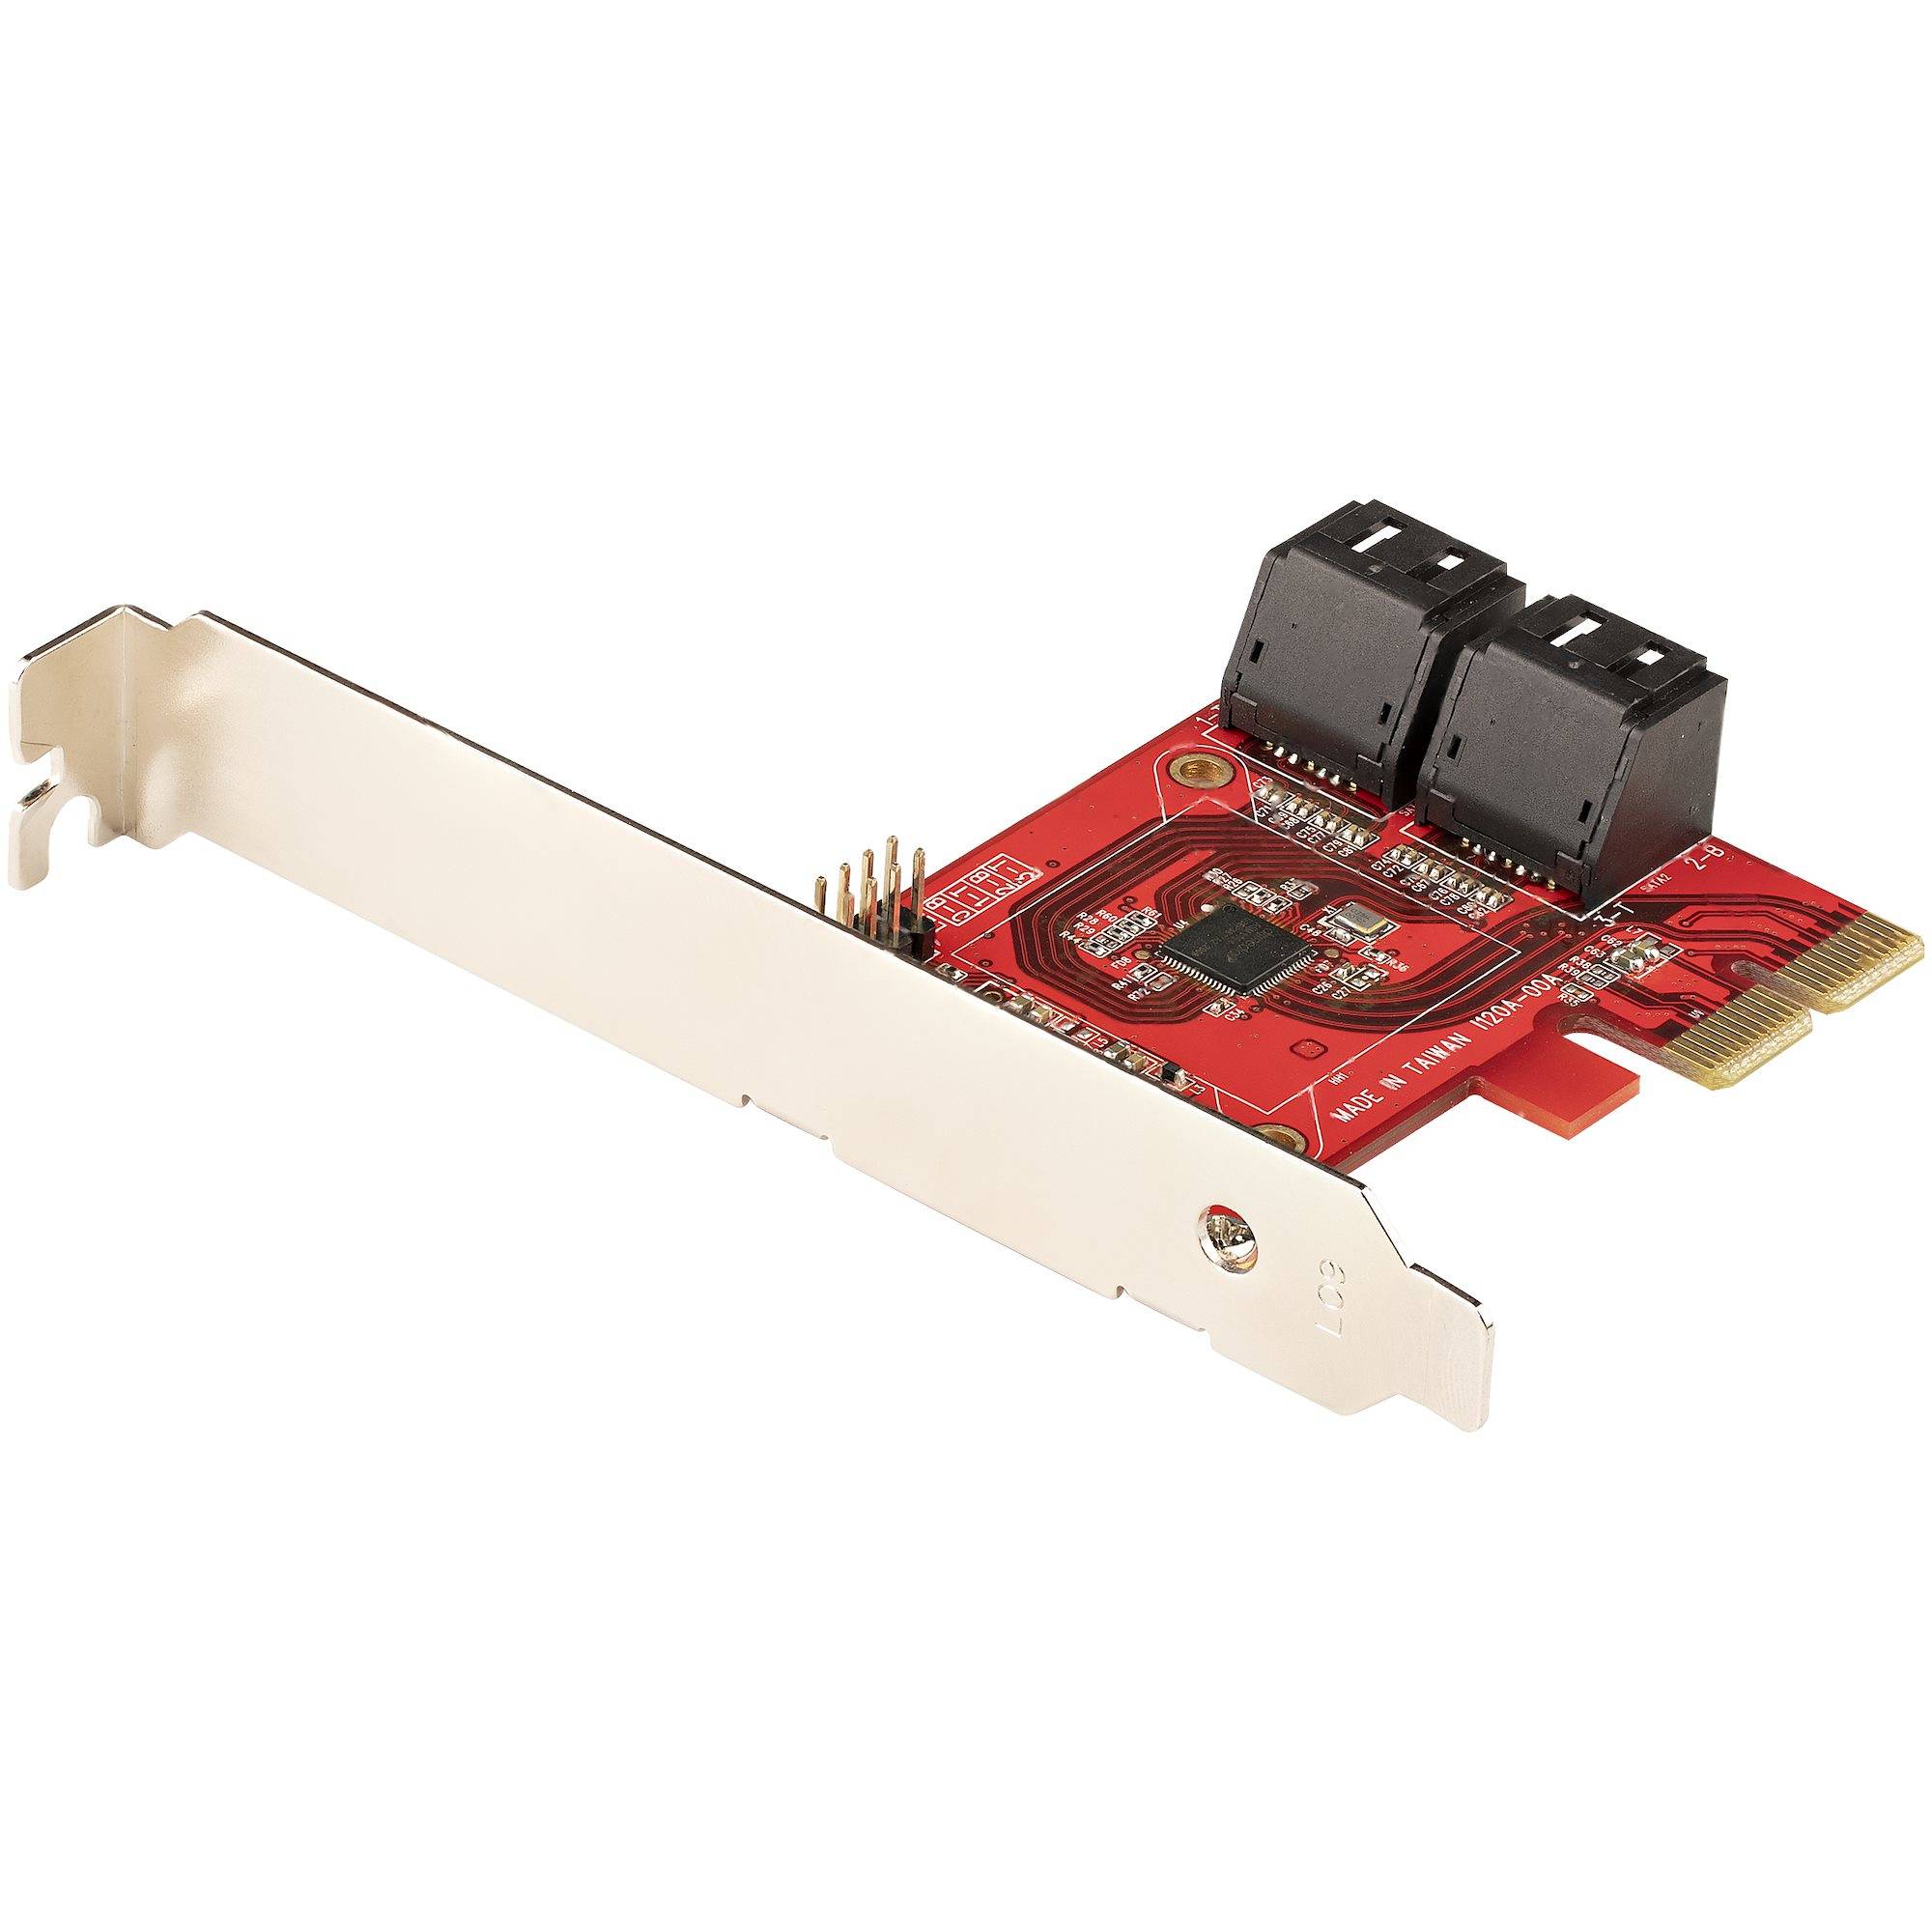 Rca Informatique - Image du produit : SATA PCIE CARD - 4 PORT (6GBPS) PCIE SATA EXPANSION CARD ASM1164